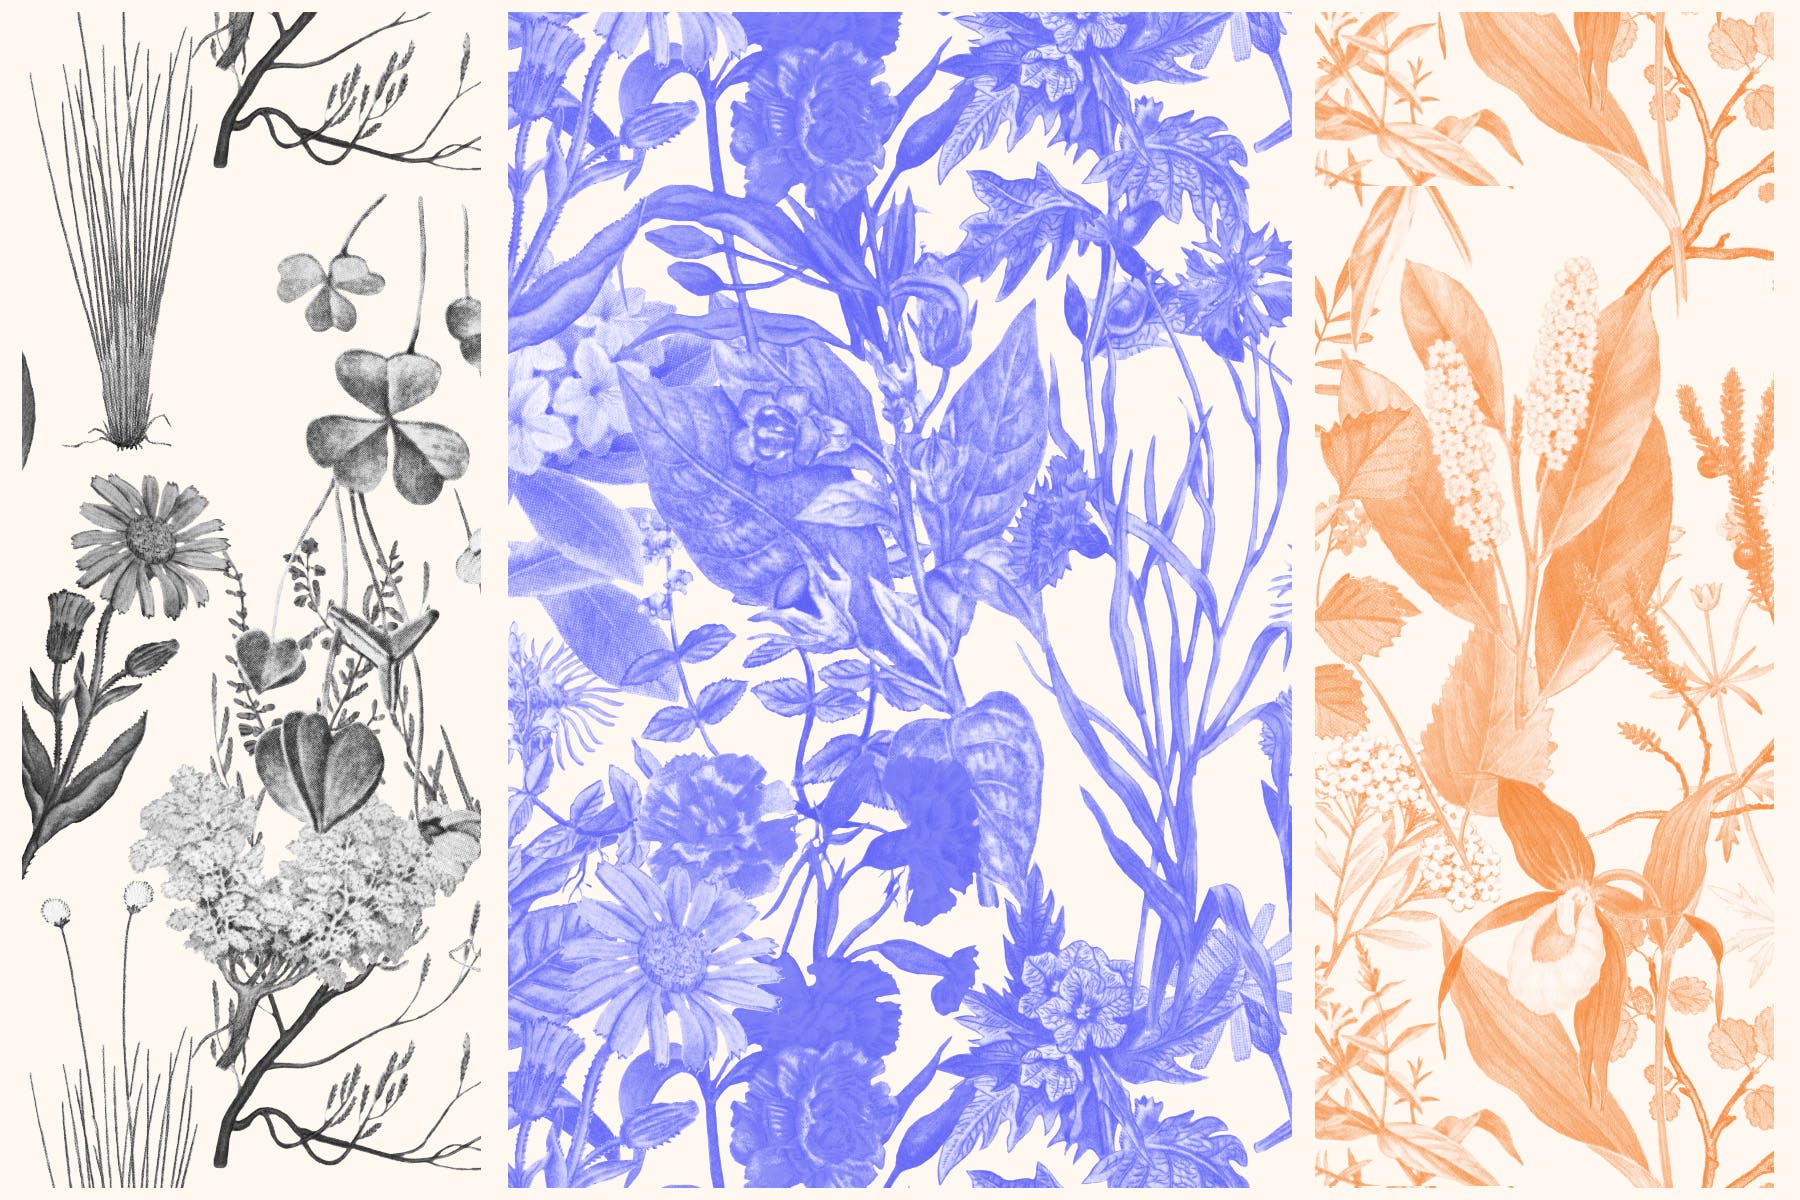 高清复古植物图案背景设计素材 Vintage Botanical Patterns插图(2)